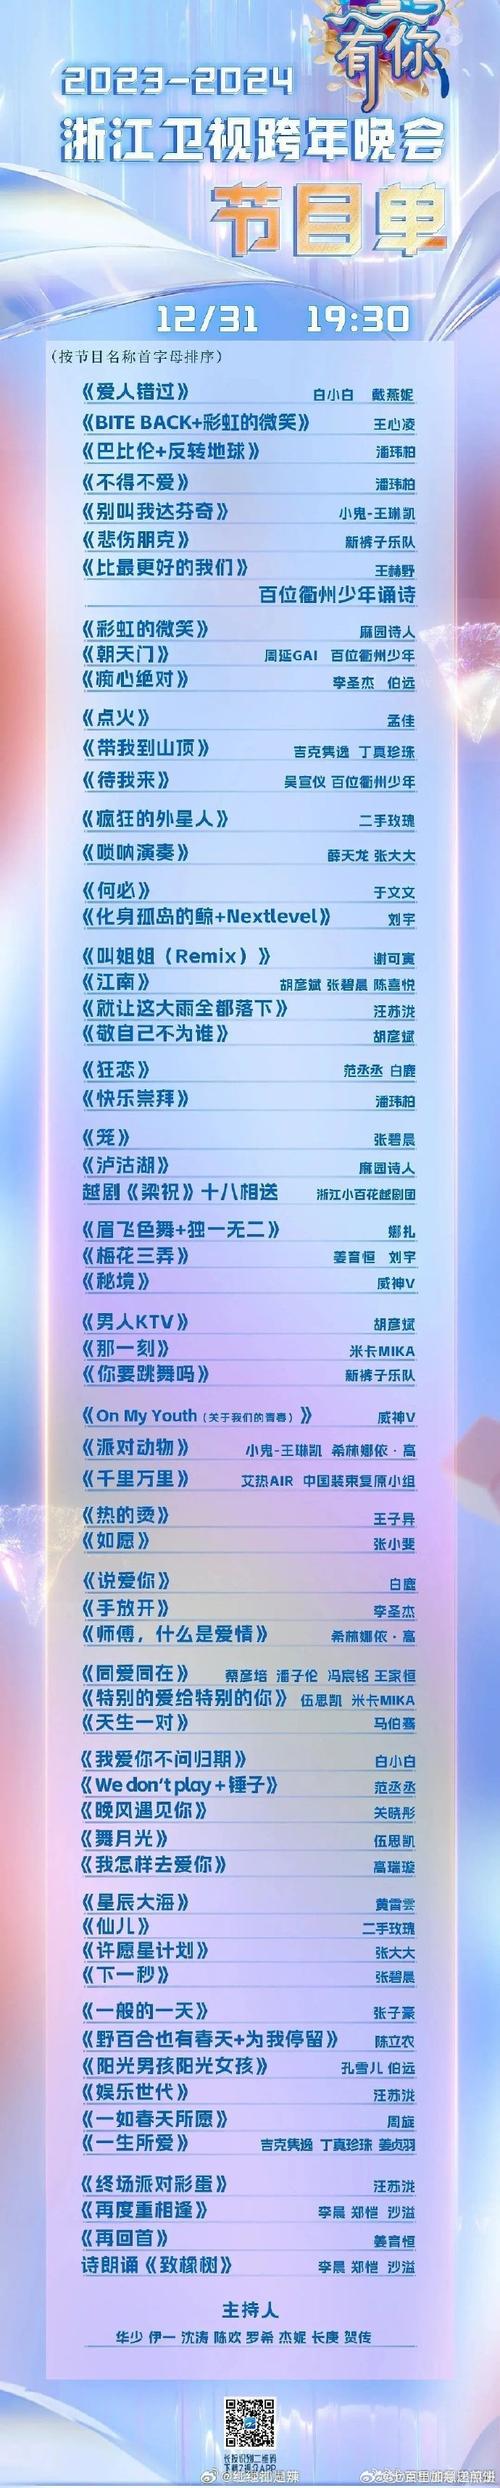 浙江卫视直播节目单2020